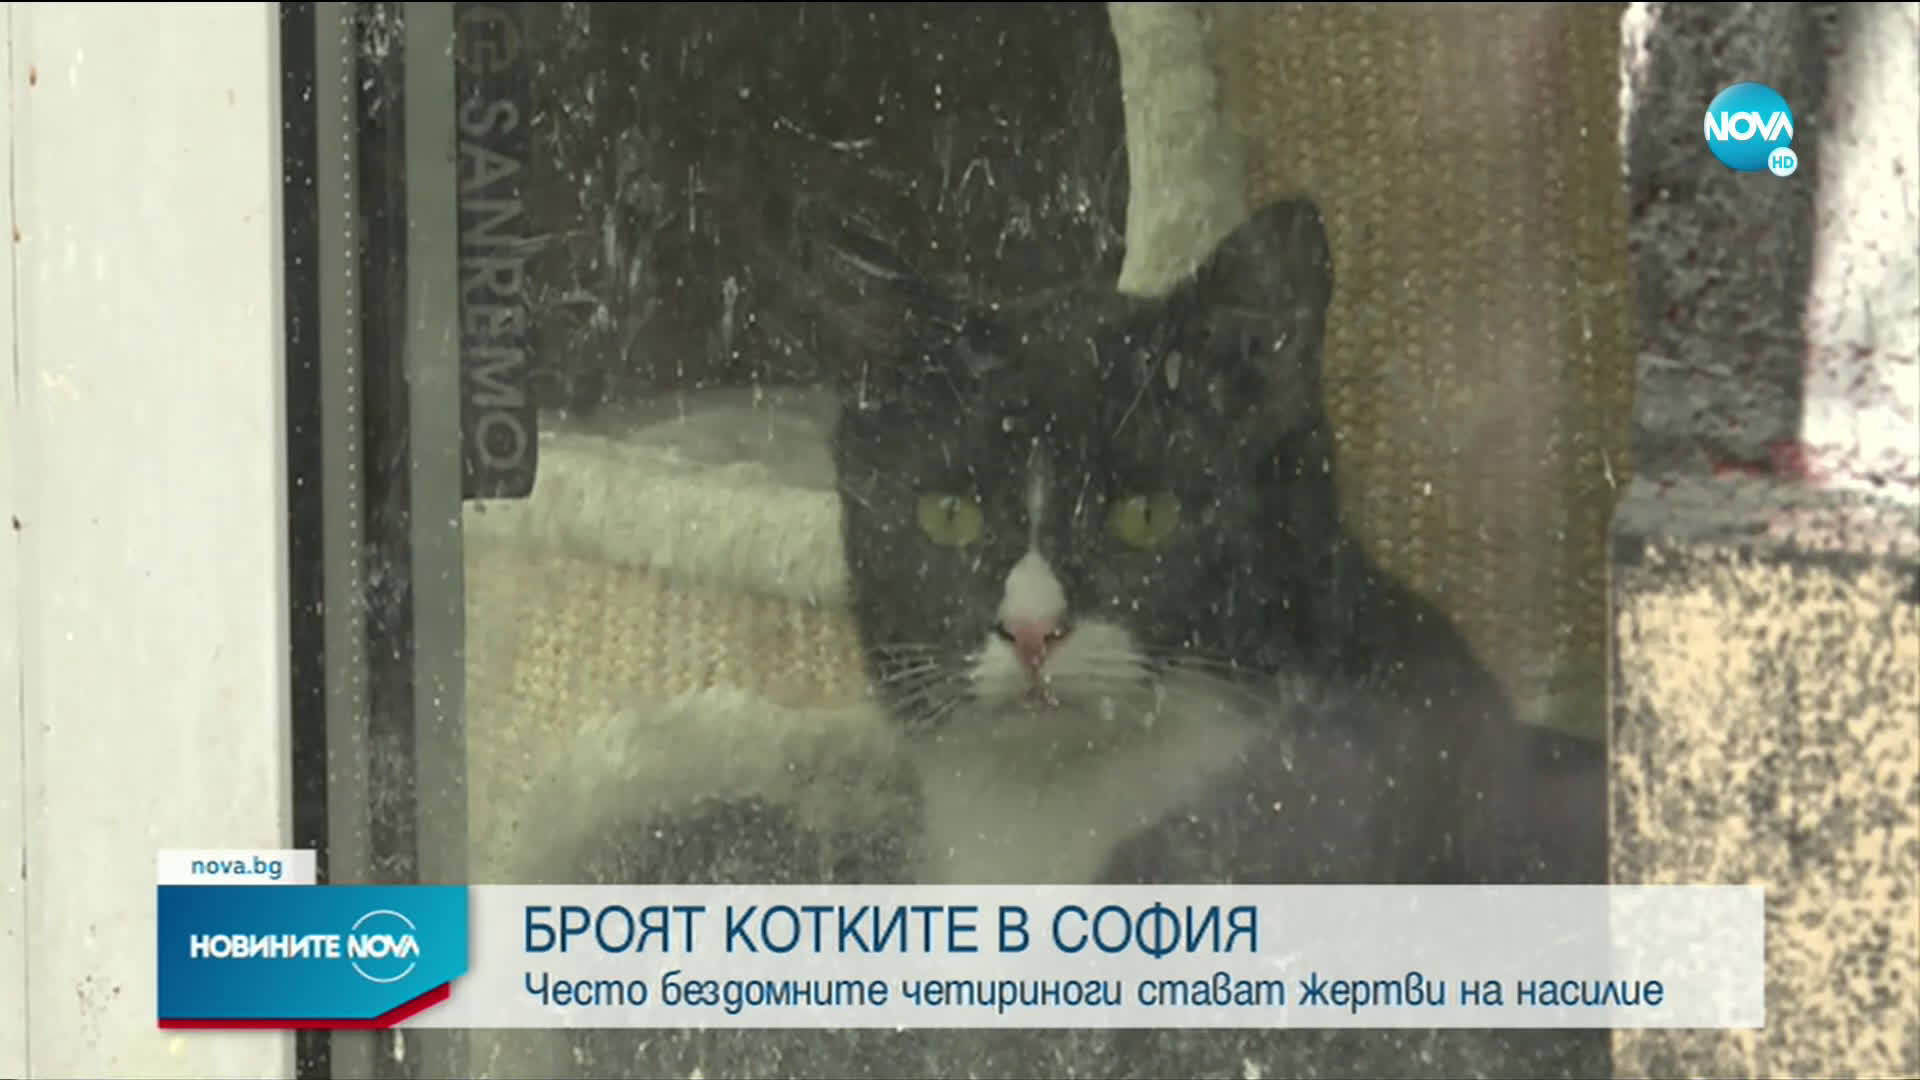 Започва преброяване на бездомните котки в София